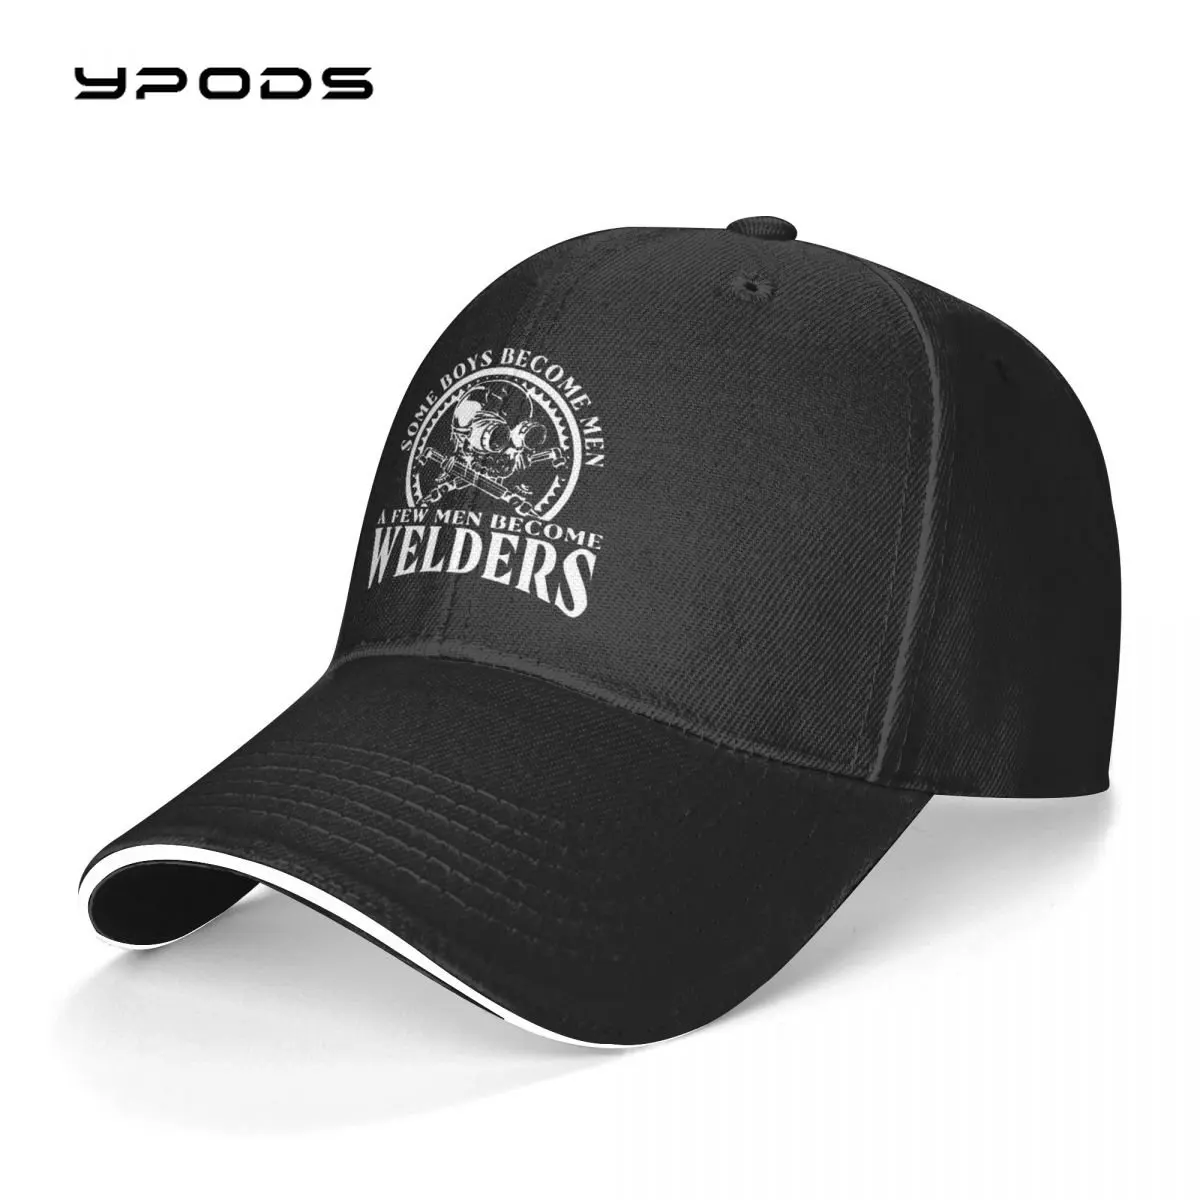 

I Am A Welder Badass Welding Men's New Baseball Cap Fashion Sun Hats Caps for Men and Women